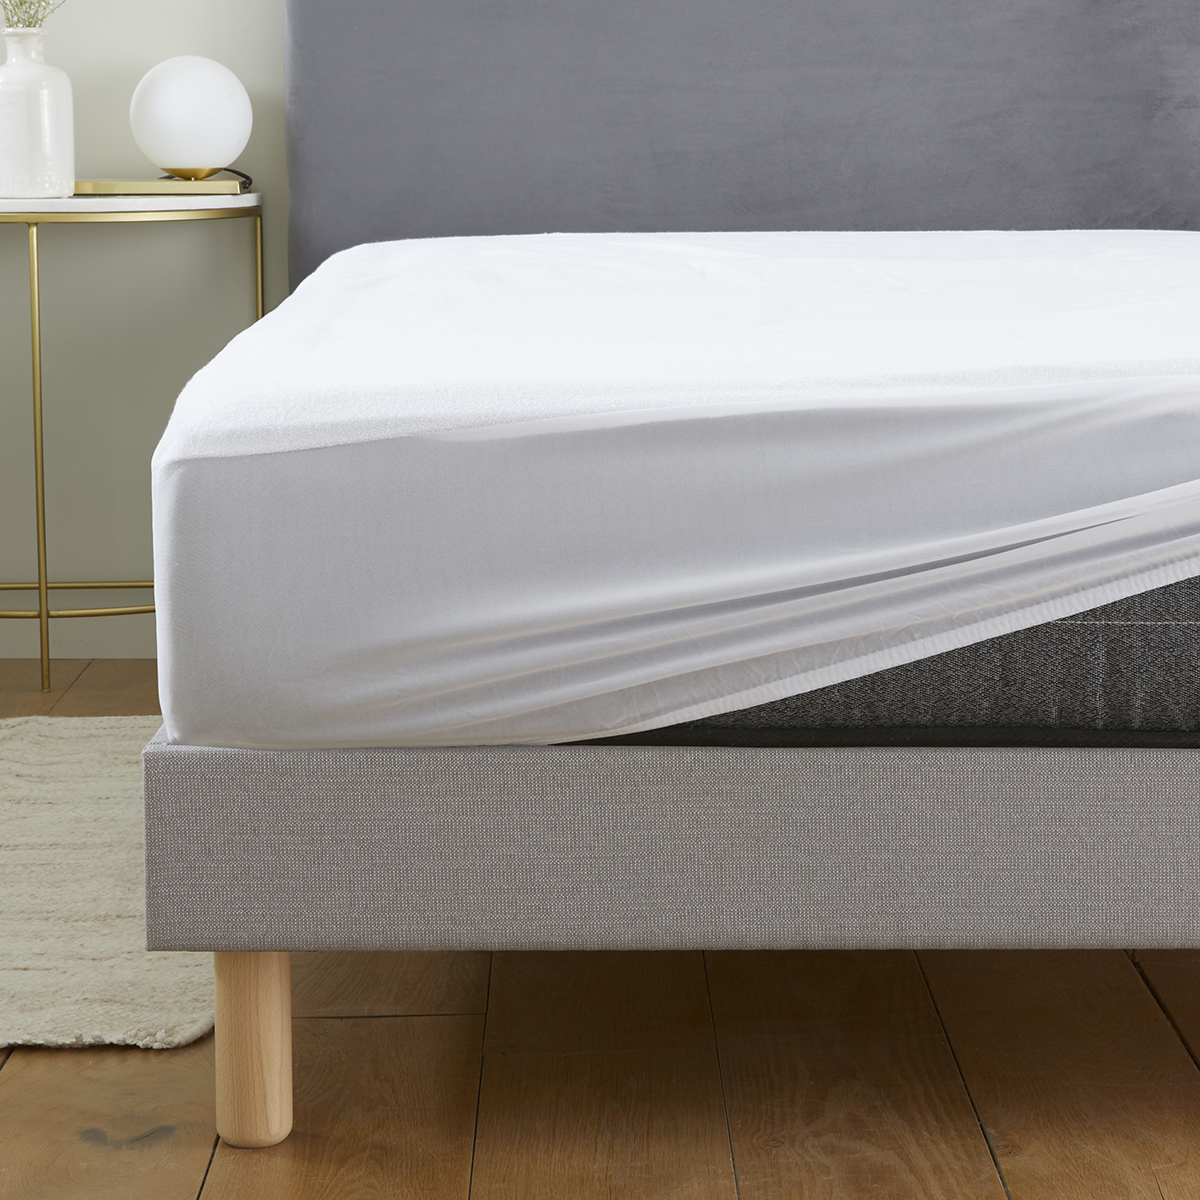 Taie d'oreiller double couche imperméable et anti-transpiration